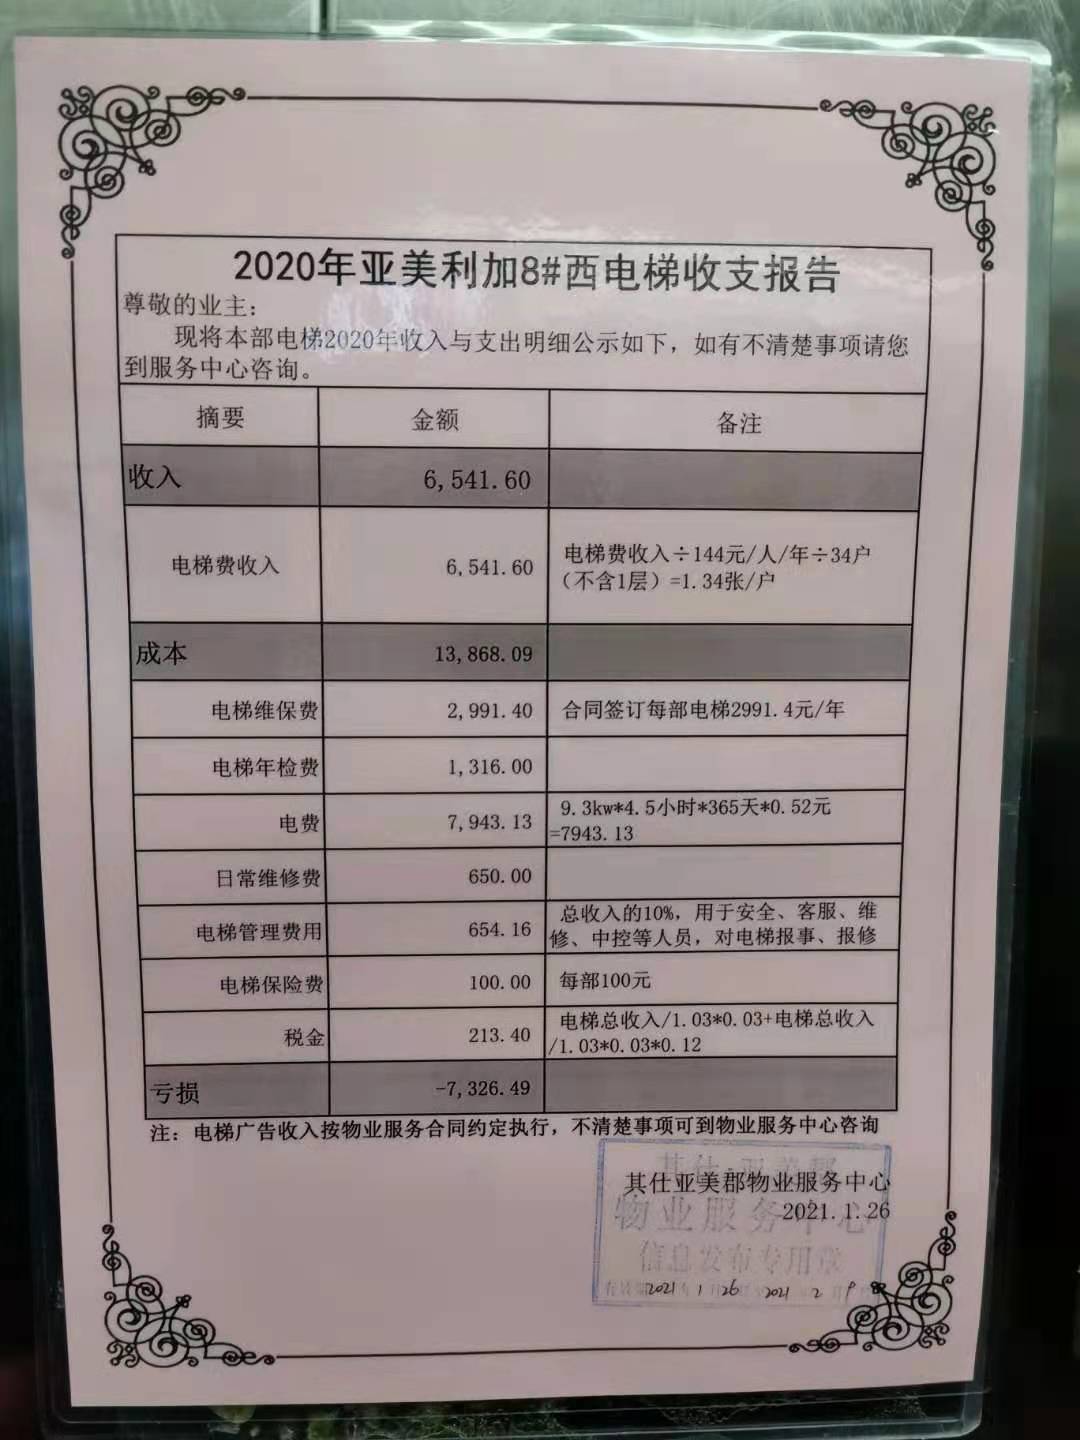 网曝 沈阳一小区物业公司晒出2020年电梯维保亏损费用账单详情